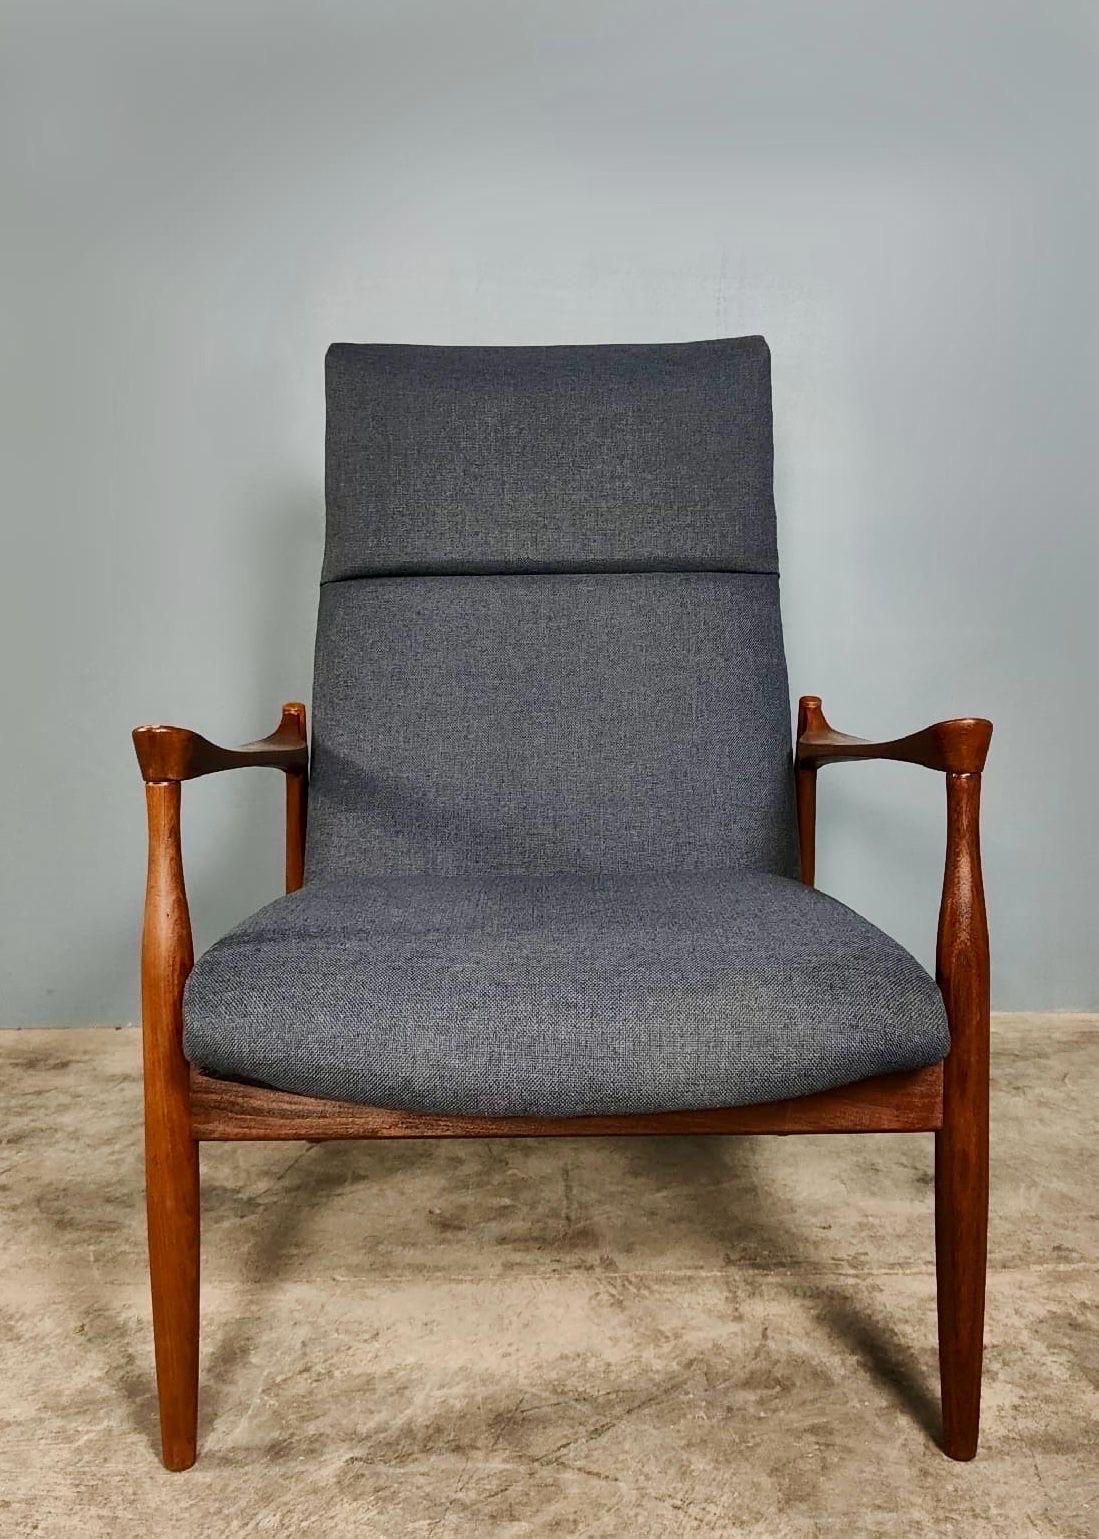 Teak Kofod Larsen G Plan Danish Range Afromosia 6249 Lounge Chair 6244 Sofa Bed Retro